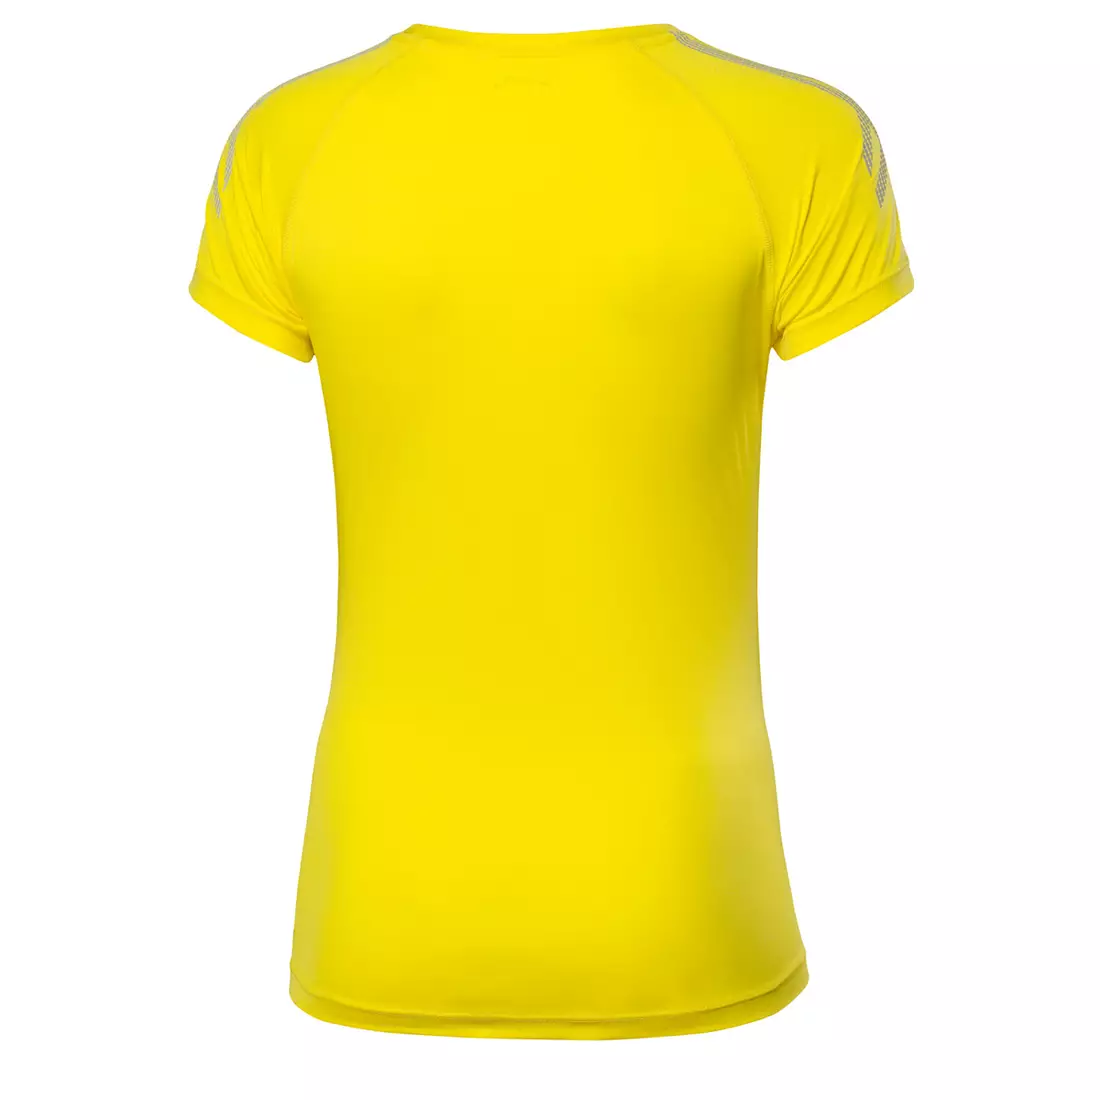 ASICS 339907-0343 TIGER TEE - tricou pentru alergare pentru femei, culoare: Galben